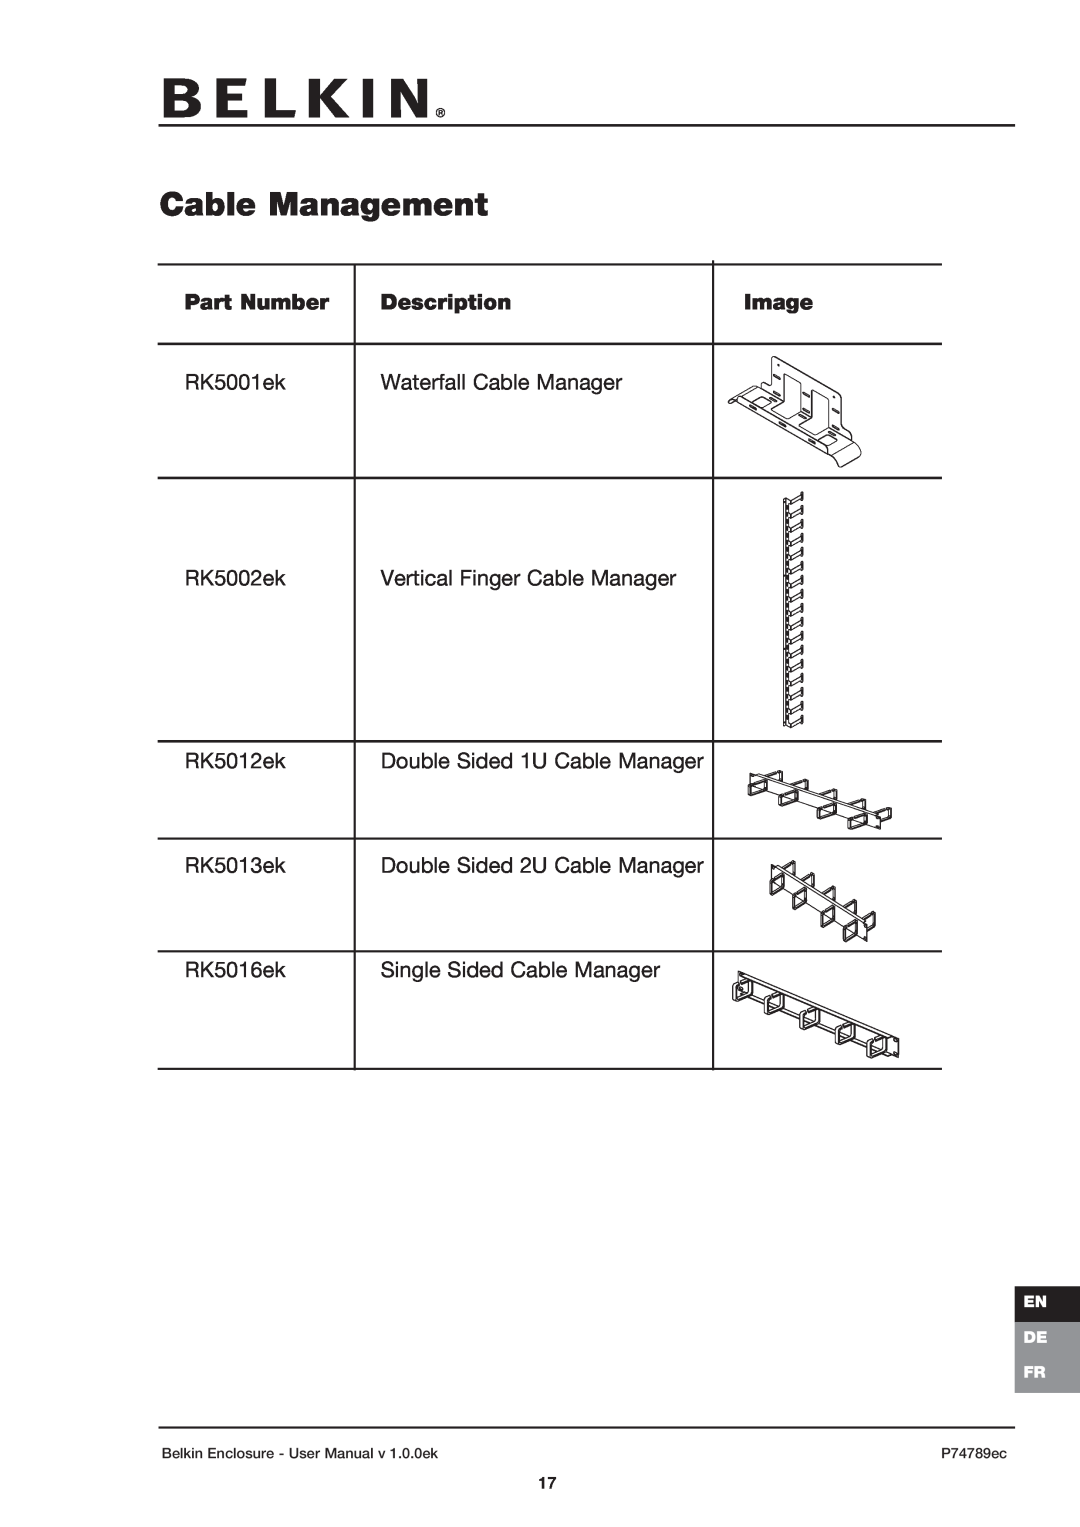 Belkin 42U user manual Cable Management, Image, Part Number, Description 